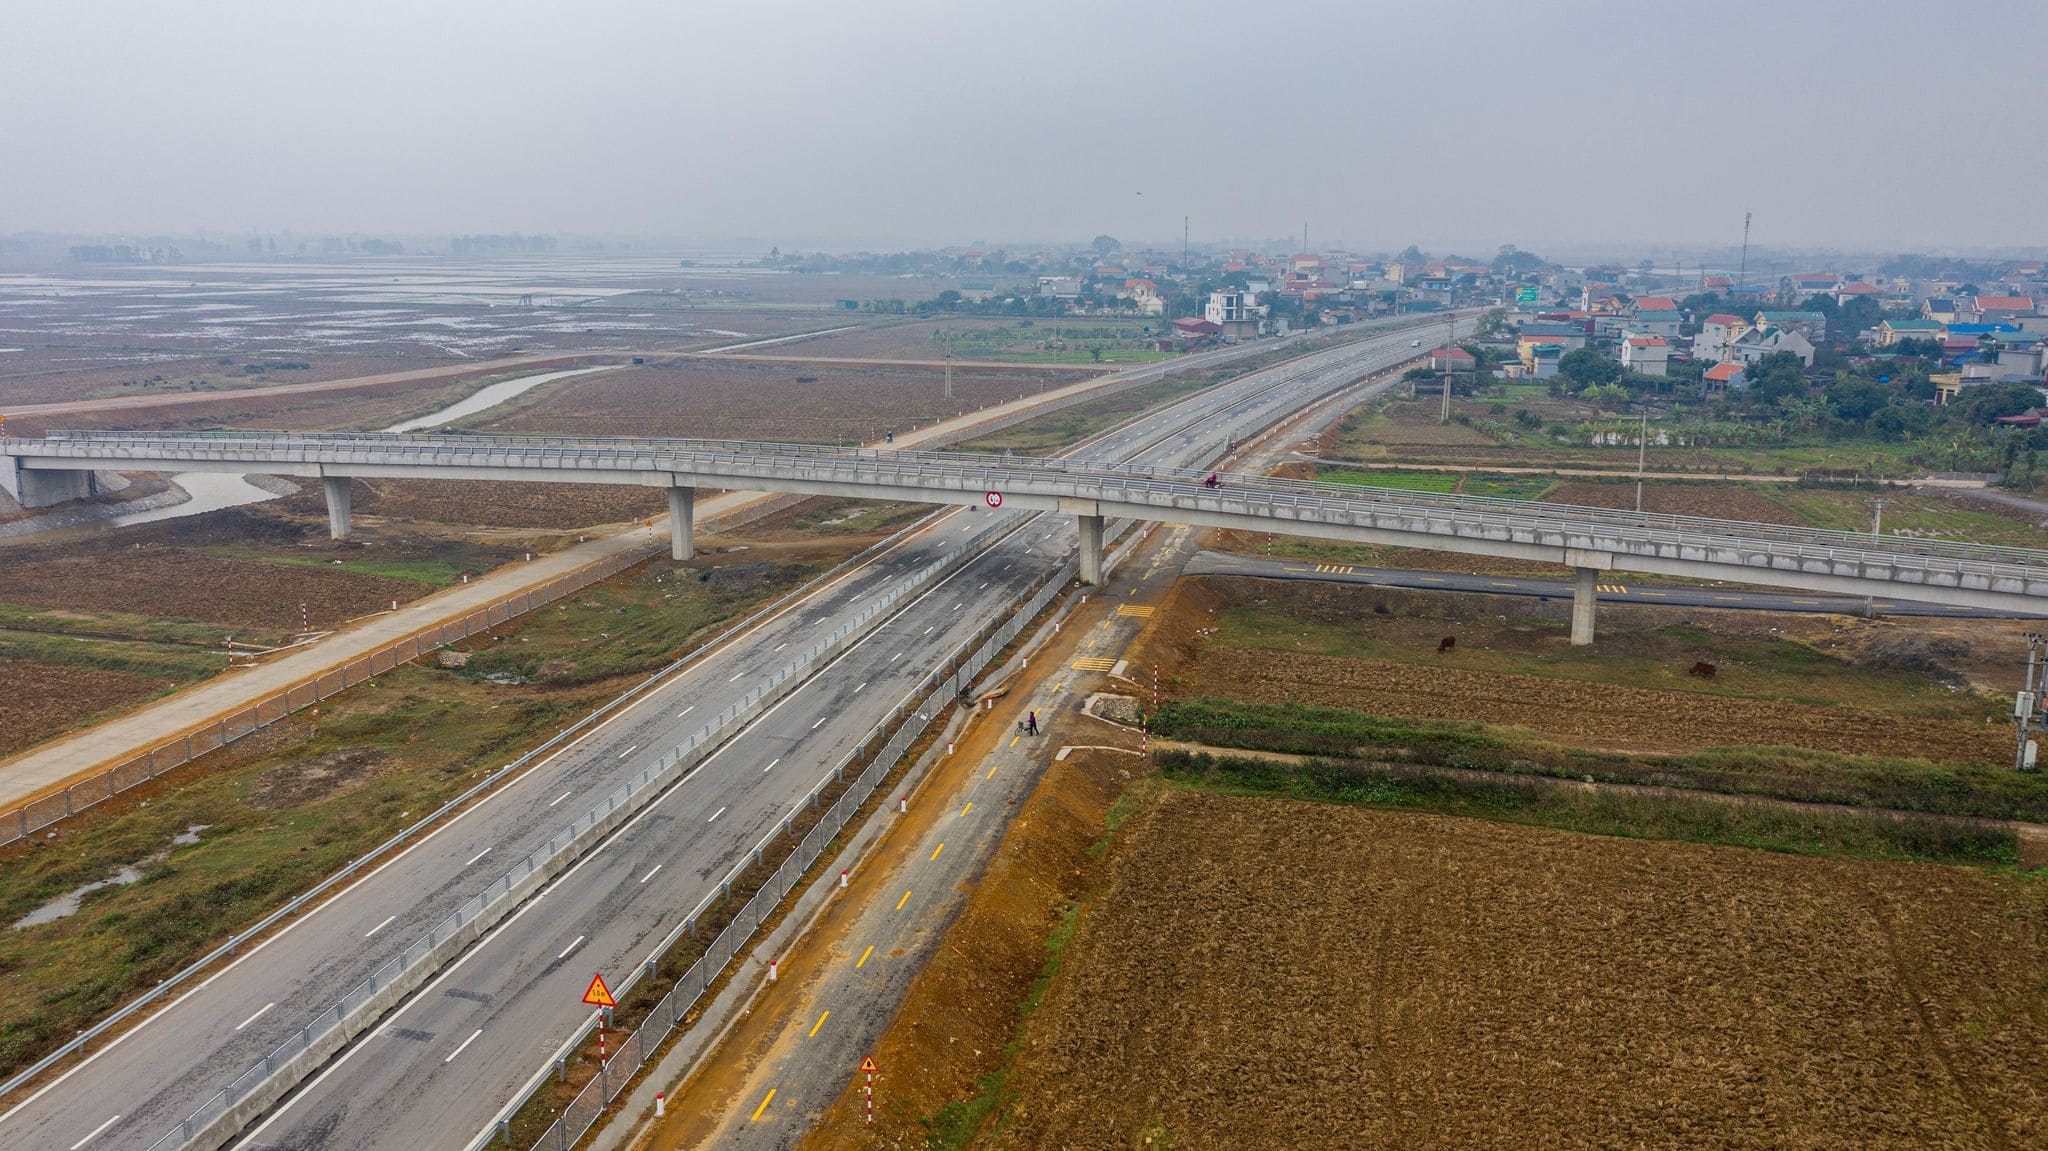 Cao tốc Cao Lãnh (Đồng Tháp) - An Hữu (Tiền Giang) với chiều dài gần 28 km nối 2 tỉnh đồng bằng sông Cửu Long (ảnh minh họa)